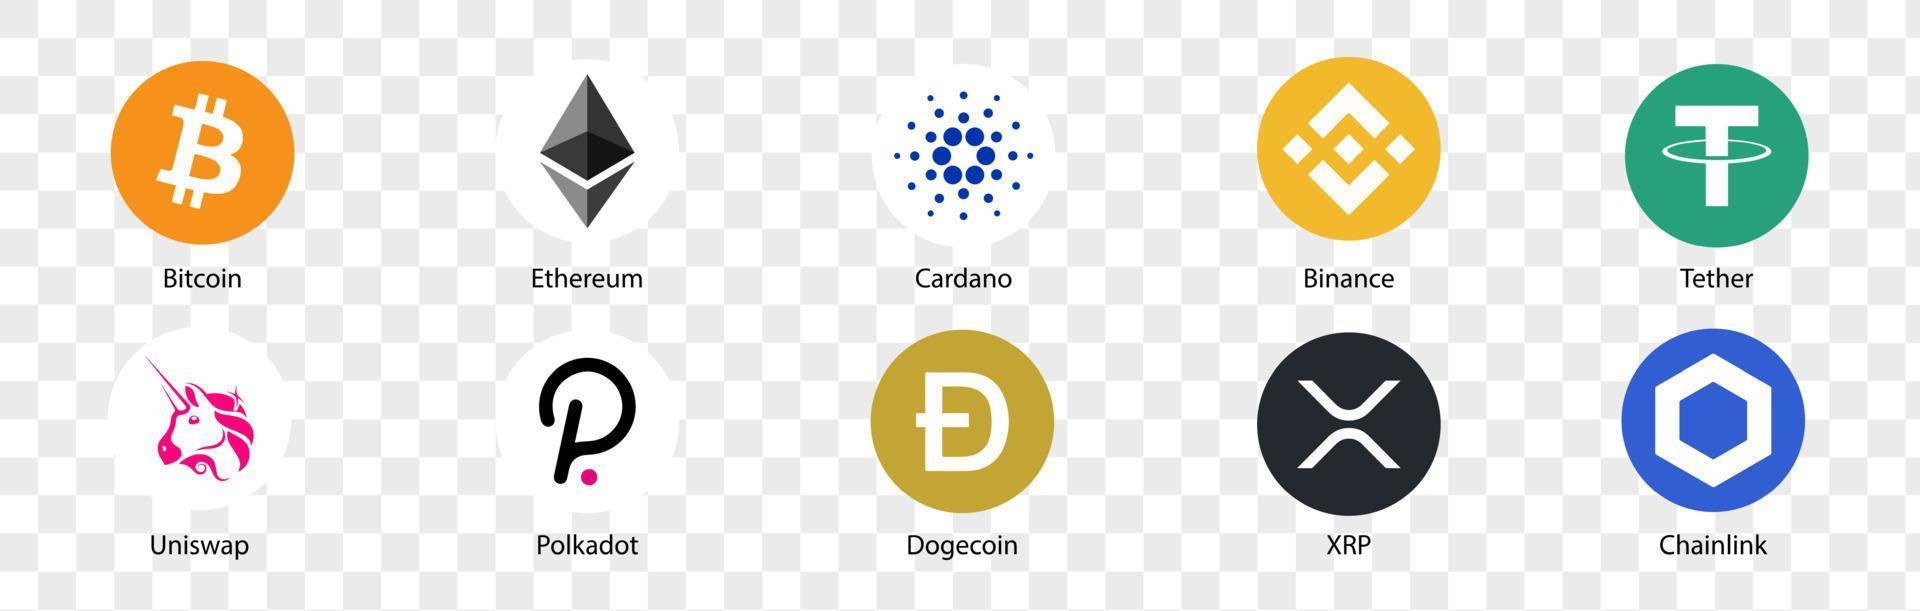 Kryptowährung-Logo-Set. Reihe von Kryptowährungssymbolen. Bitcoin, Ethereum, Cardano, Binance, Tether, Uniswap, Polkadot, Dogecoin, XRP, Chainlink. Vektorgrafiken. vektor